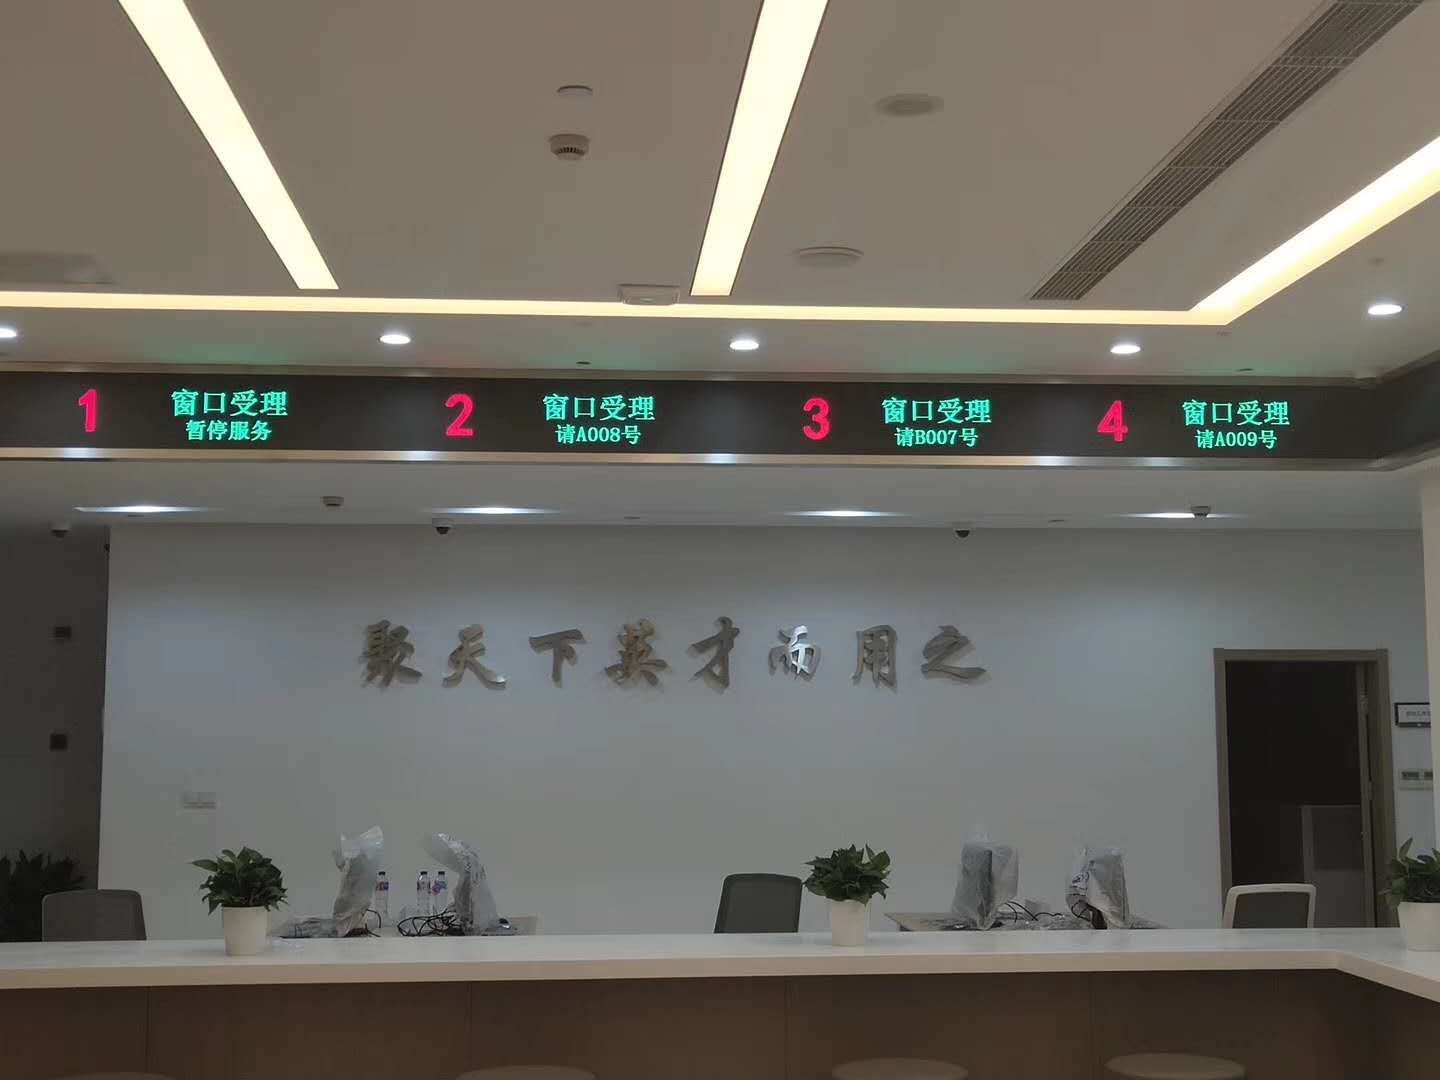 上海黄浦区人才服务中心LED显示屏